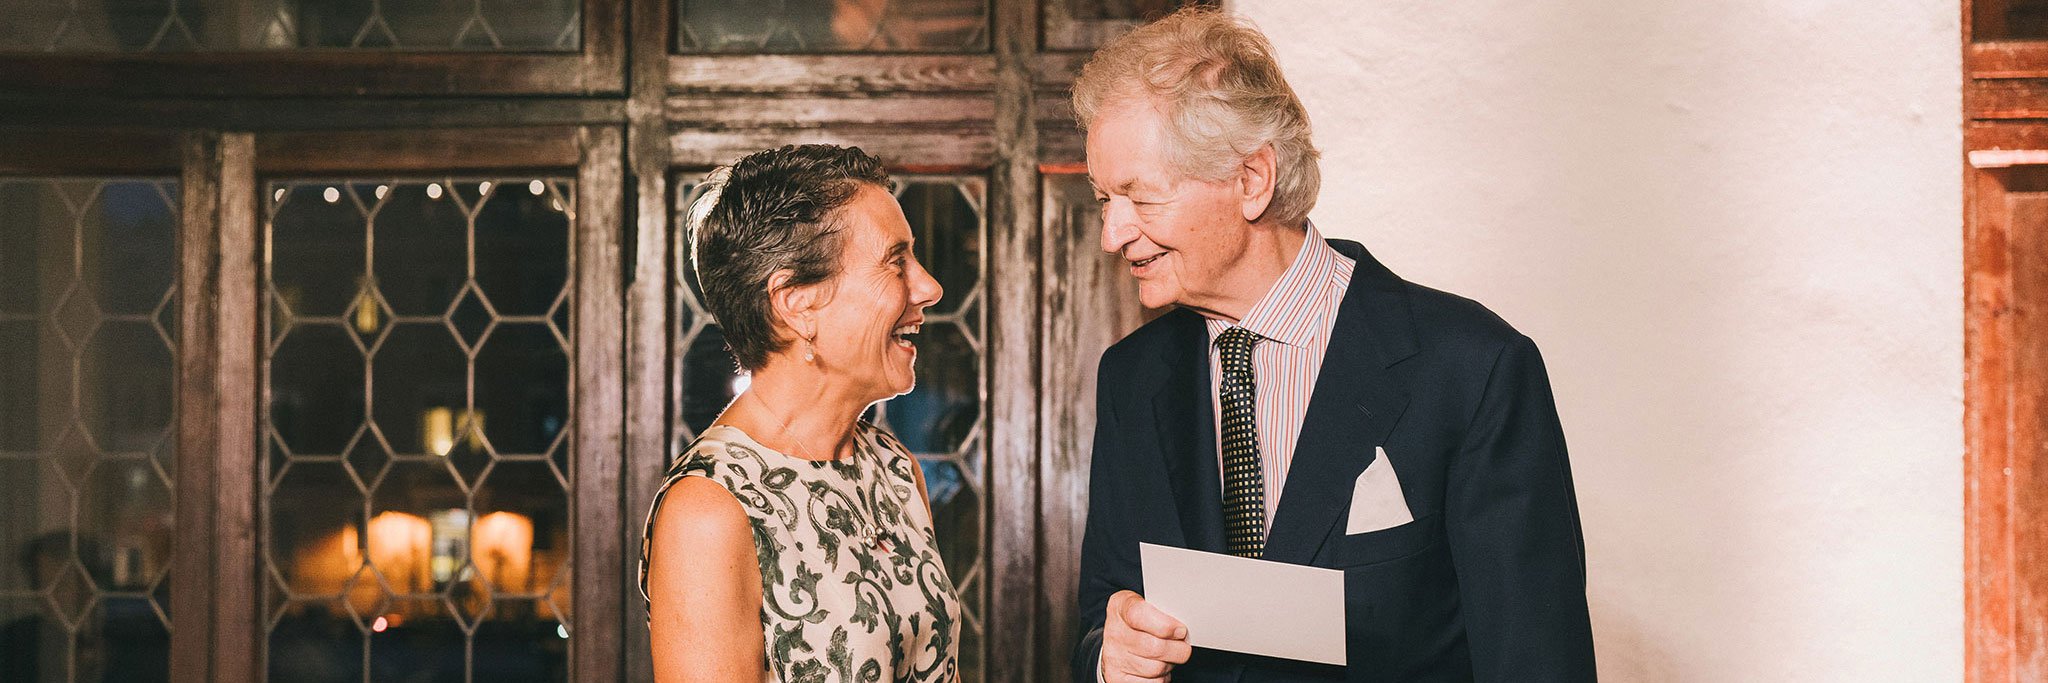 Giovanni Geddes da Filicaja mit Karole Vail, Direktorin der Peggy Guggenheim Collection.